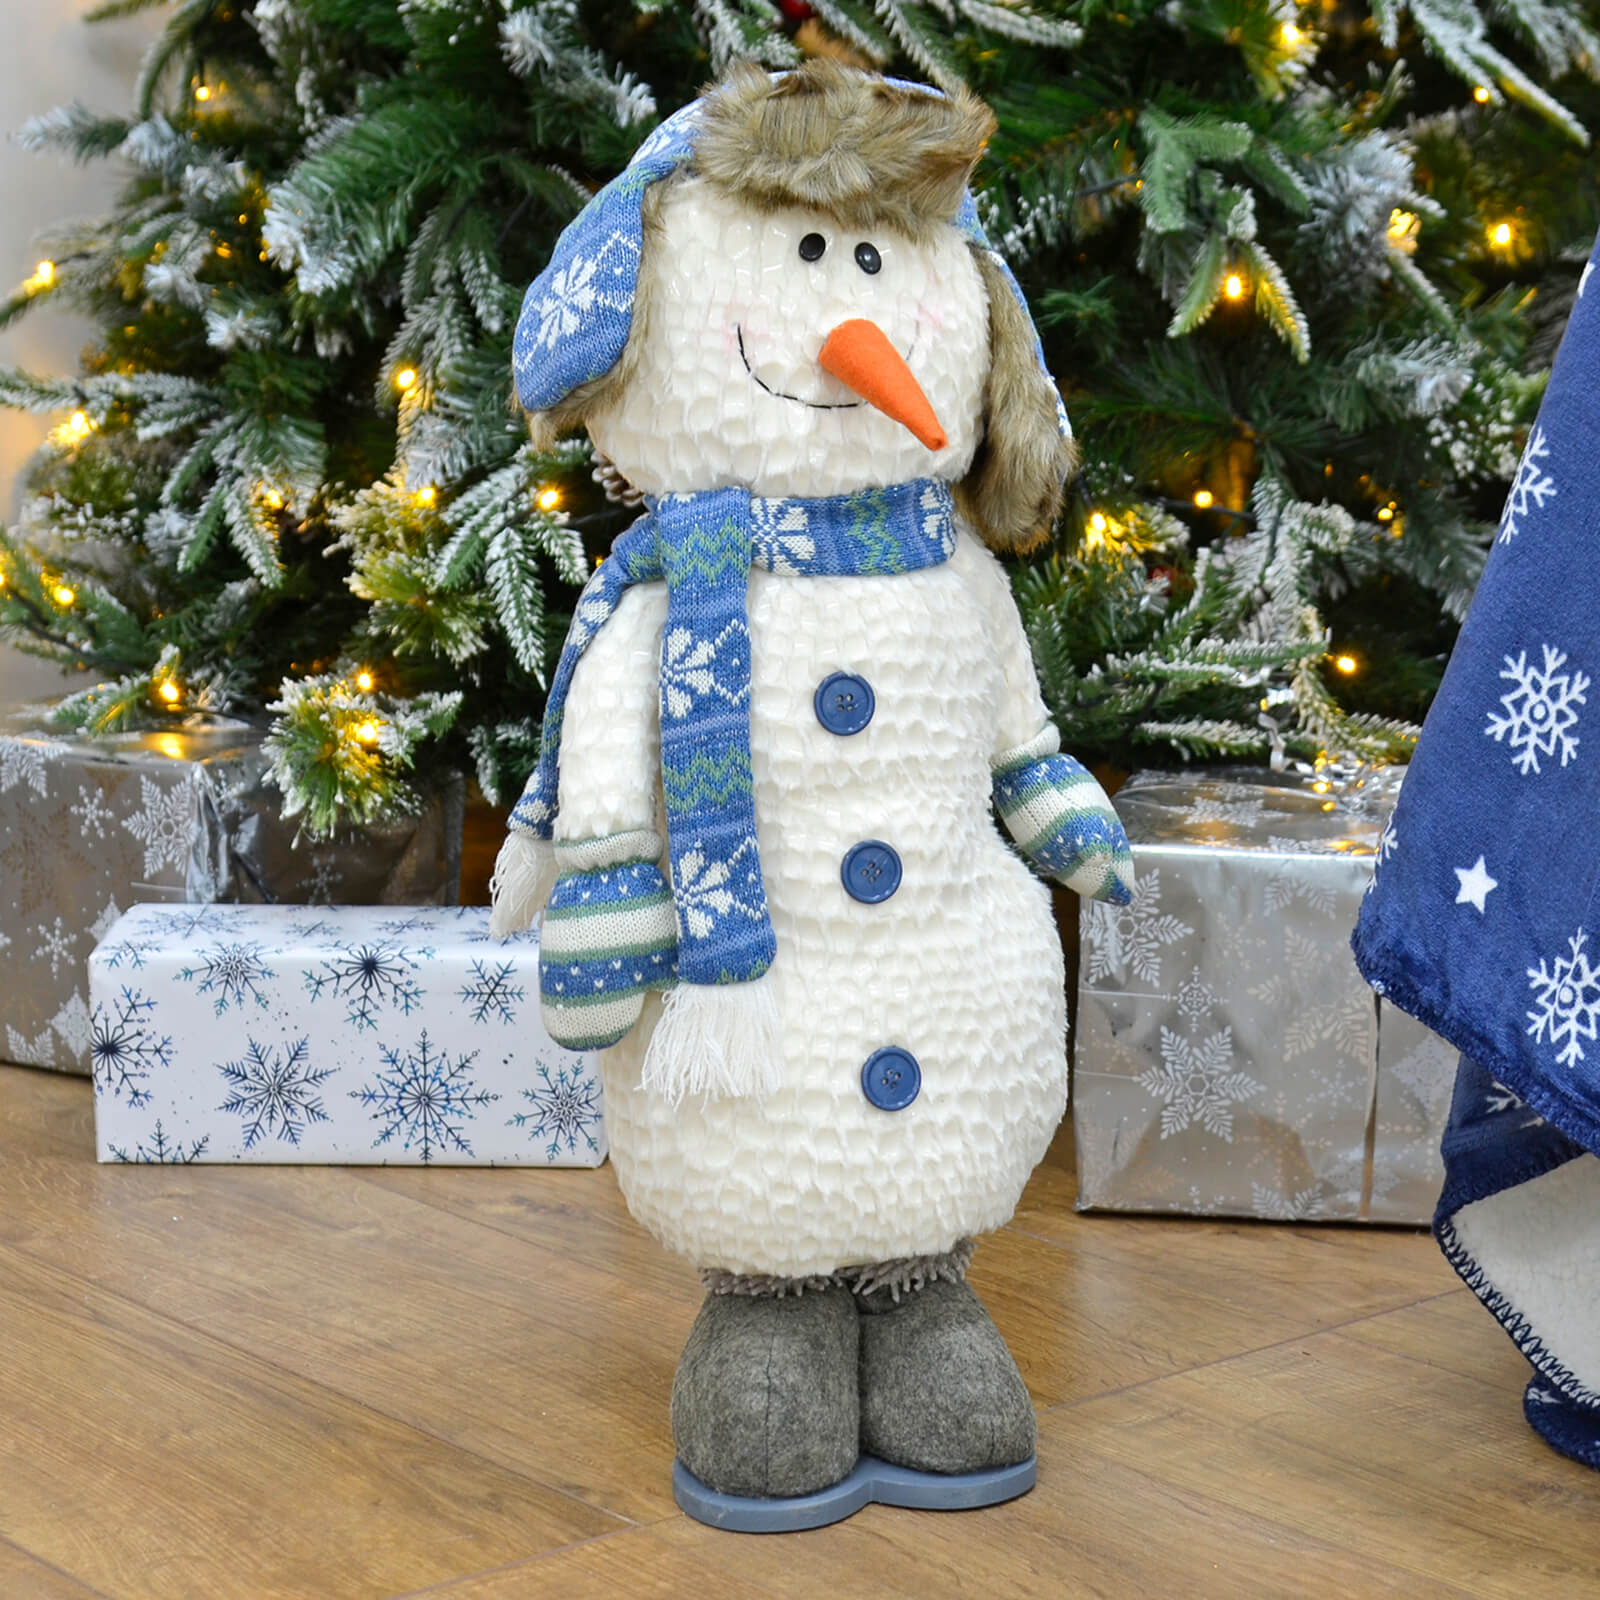 Mr Crimbo Plush Christmas Figure Decoration Blue White Scarf - MrCrimbo.co.uk -XS5131 - Polar Bear -christmas decorations